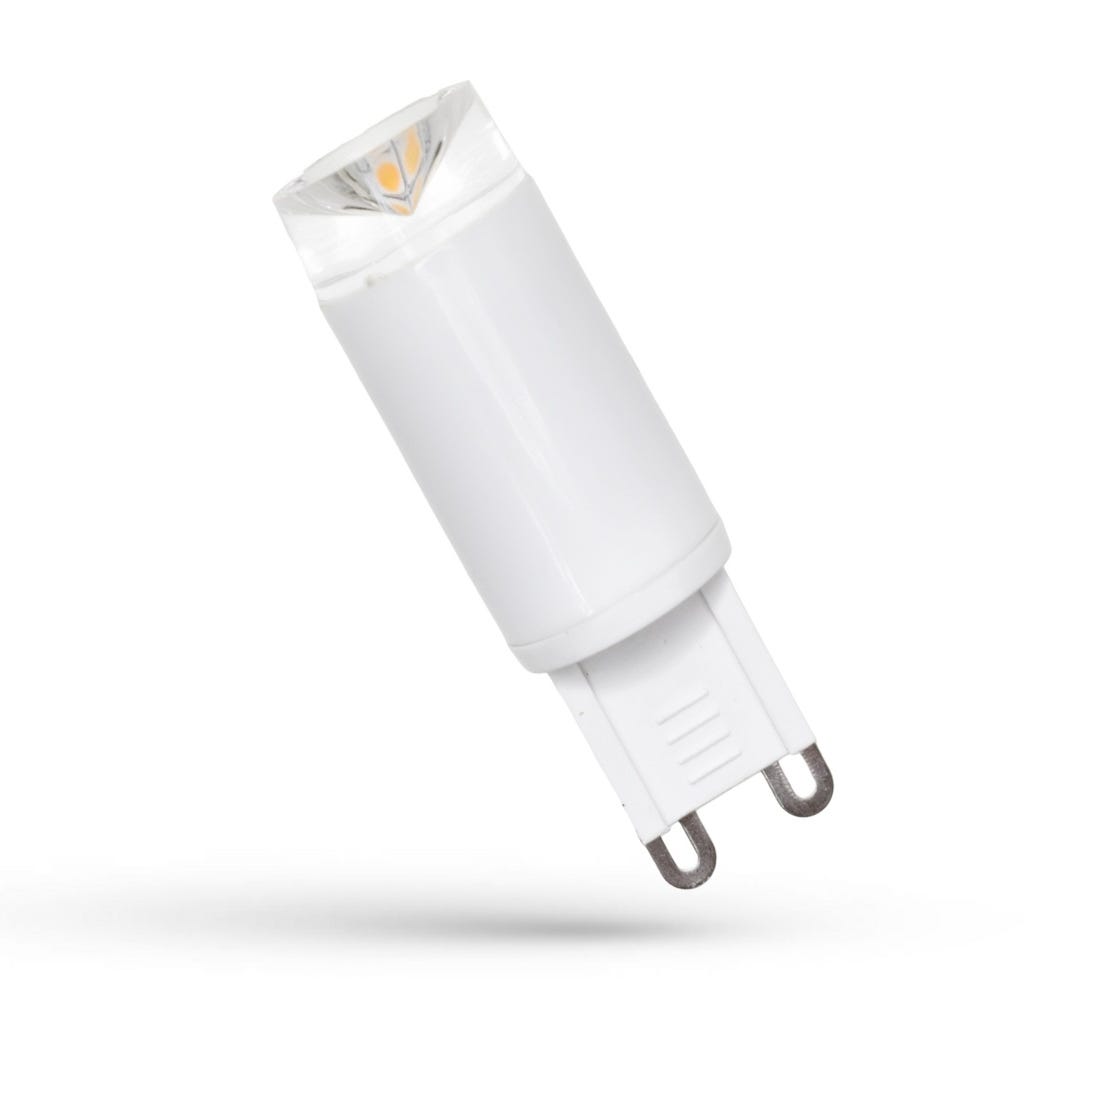 Ampoule LED G9 3000K blanc chaud 3W, ampoule LED à douille G9 à